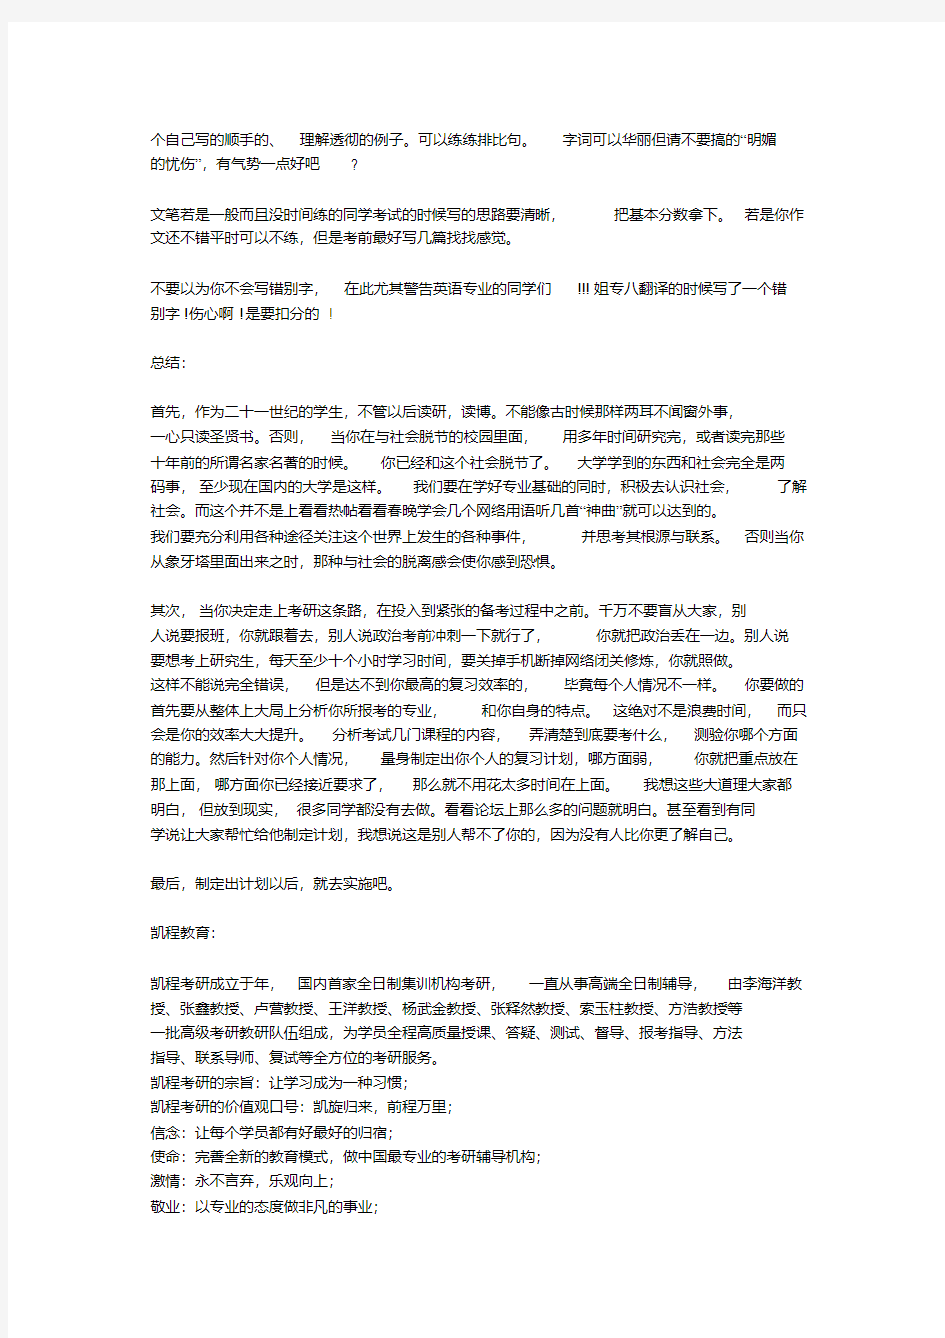 翻译硕士(MTI)汉语写作与百科知识复习技巧